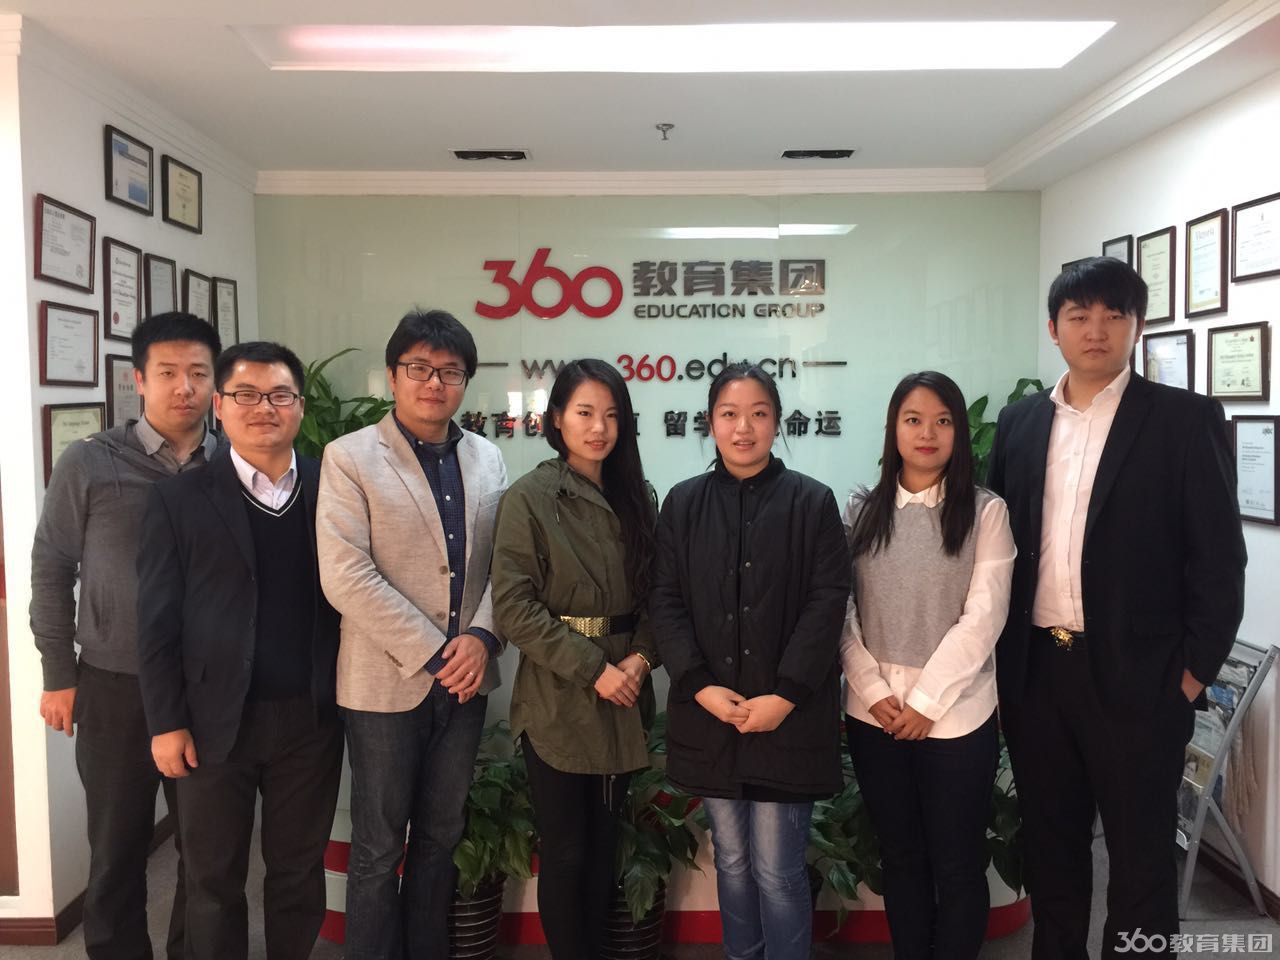 伦比亚大学项目负责人来访上海360教育集团总